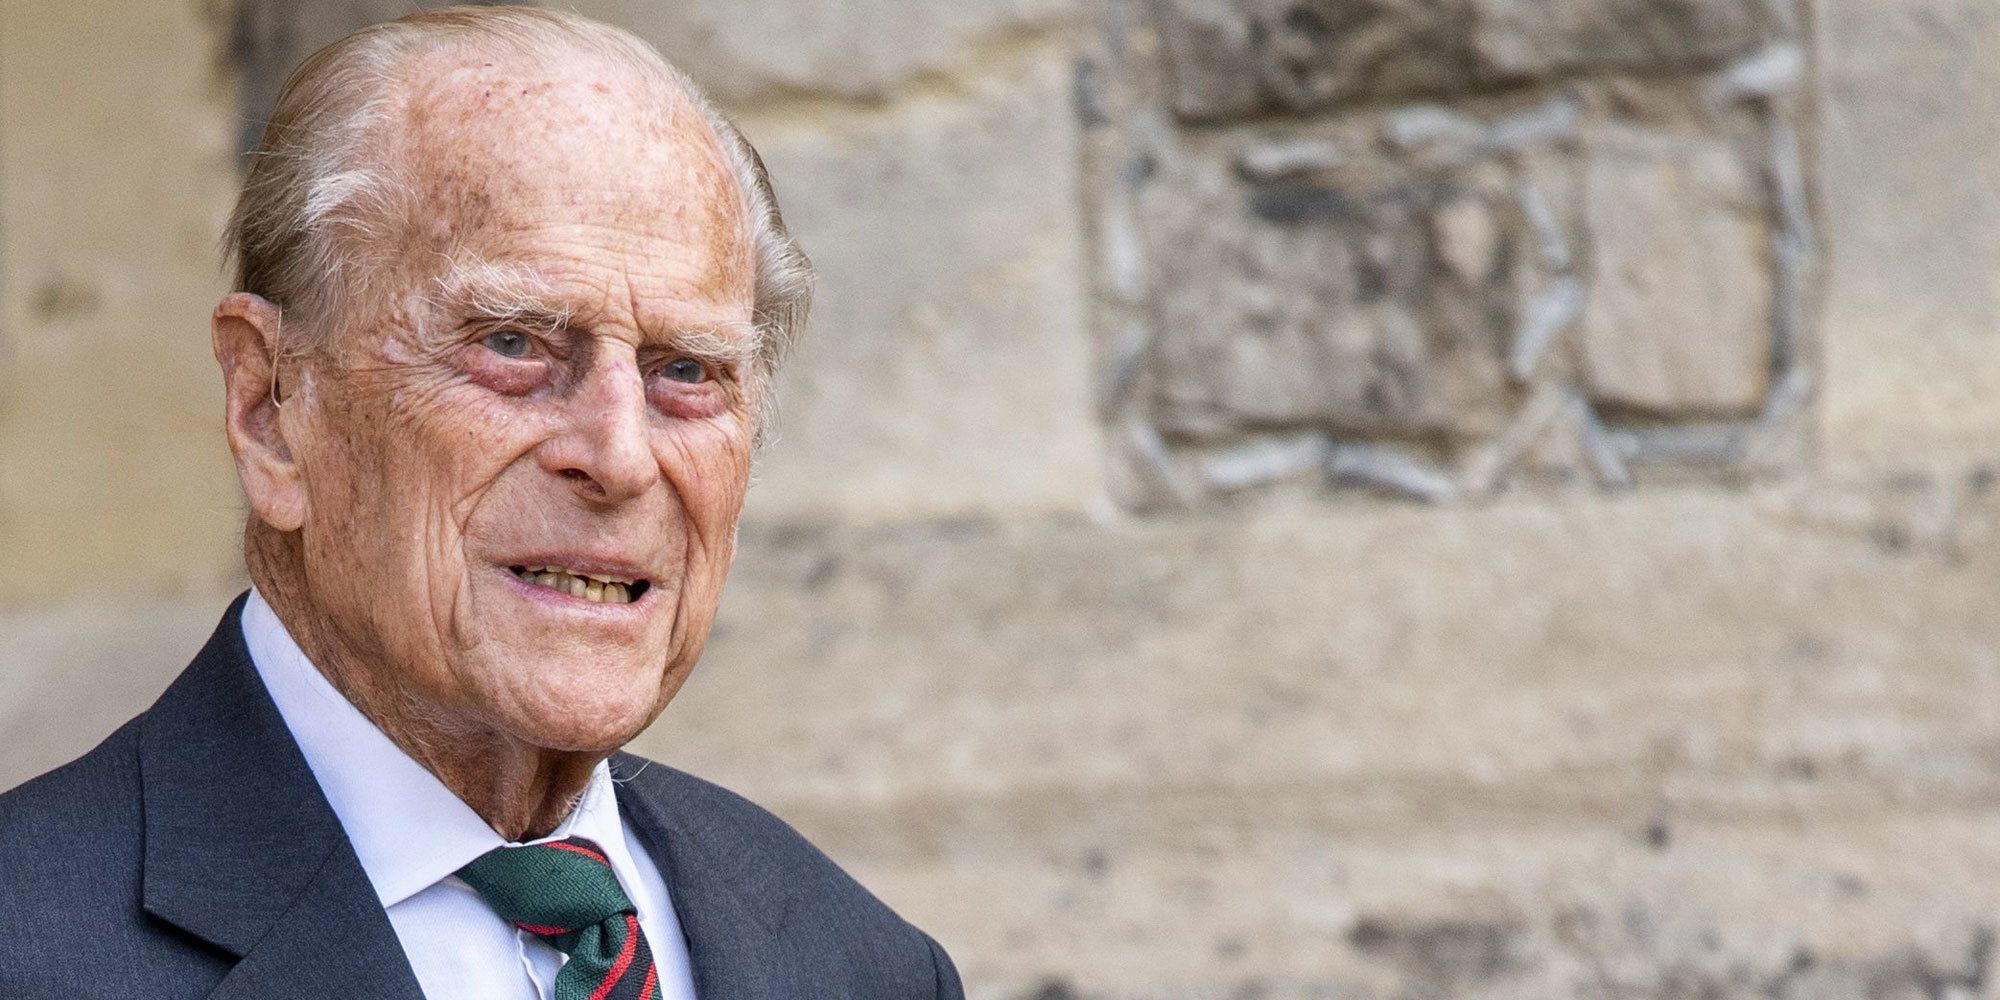 El final de la larga vida del Duque de Edimburgo: confinamiento, reencuentro, una boda y una cálida despedida